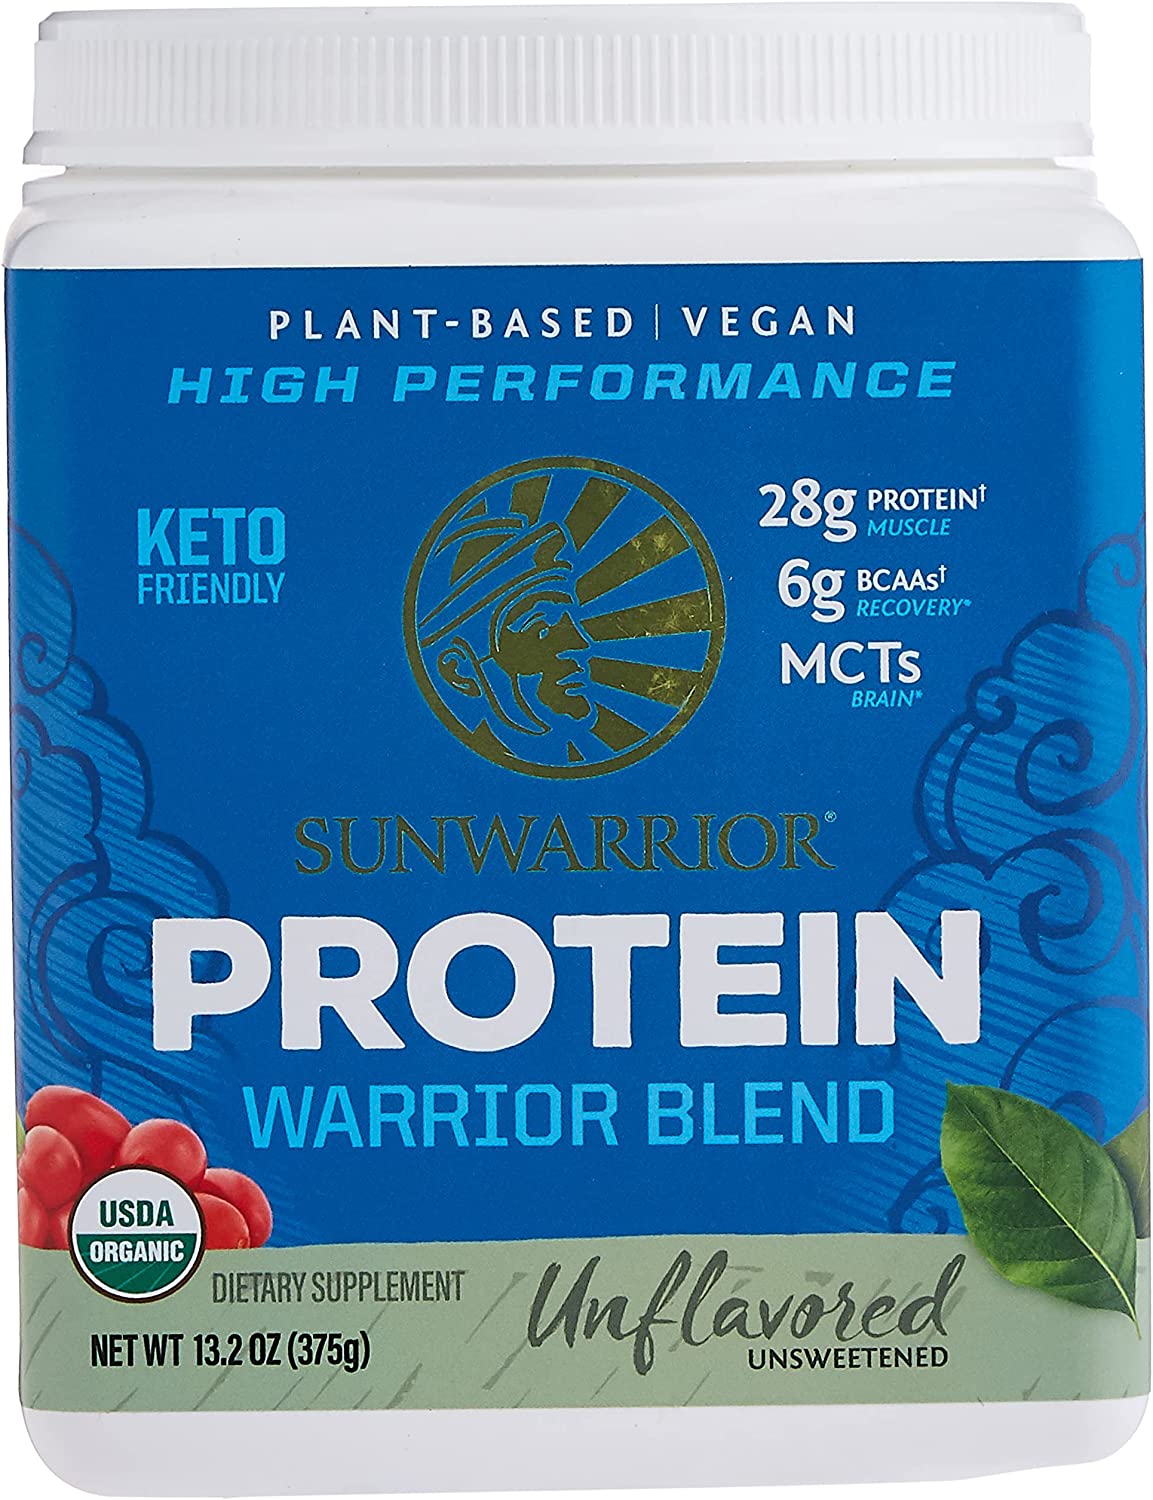 Sunwarrior Protein Warrior Blend 375g - Unflavored